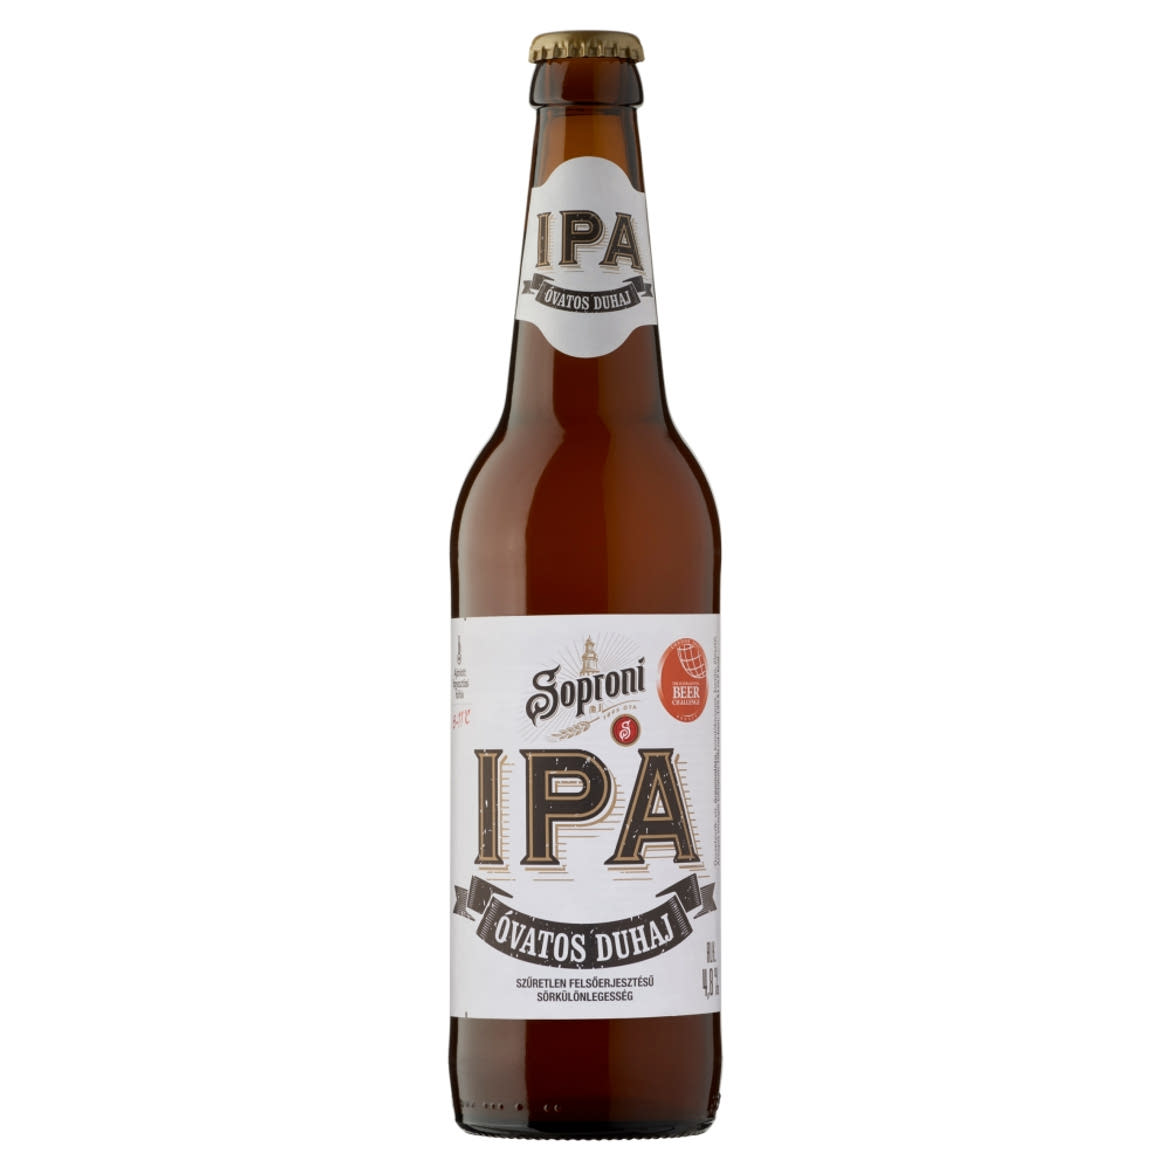 Soproni Óvatos Duhaj IPA szűretlen felsőerjesztésű sörkülönlegesség 4,8% 0,5 l üveg